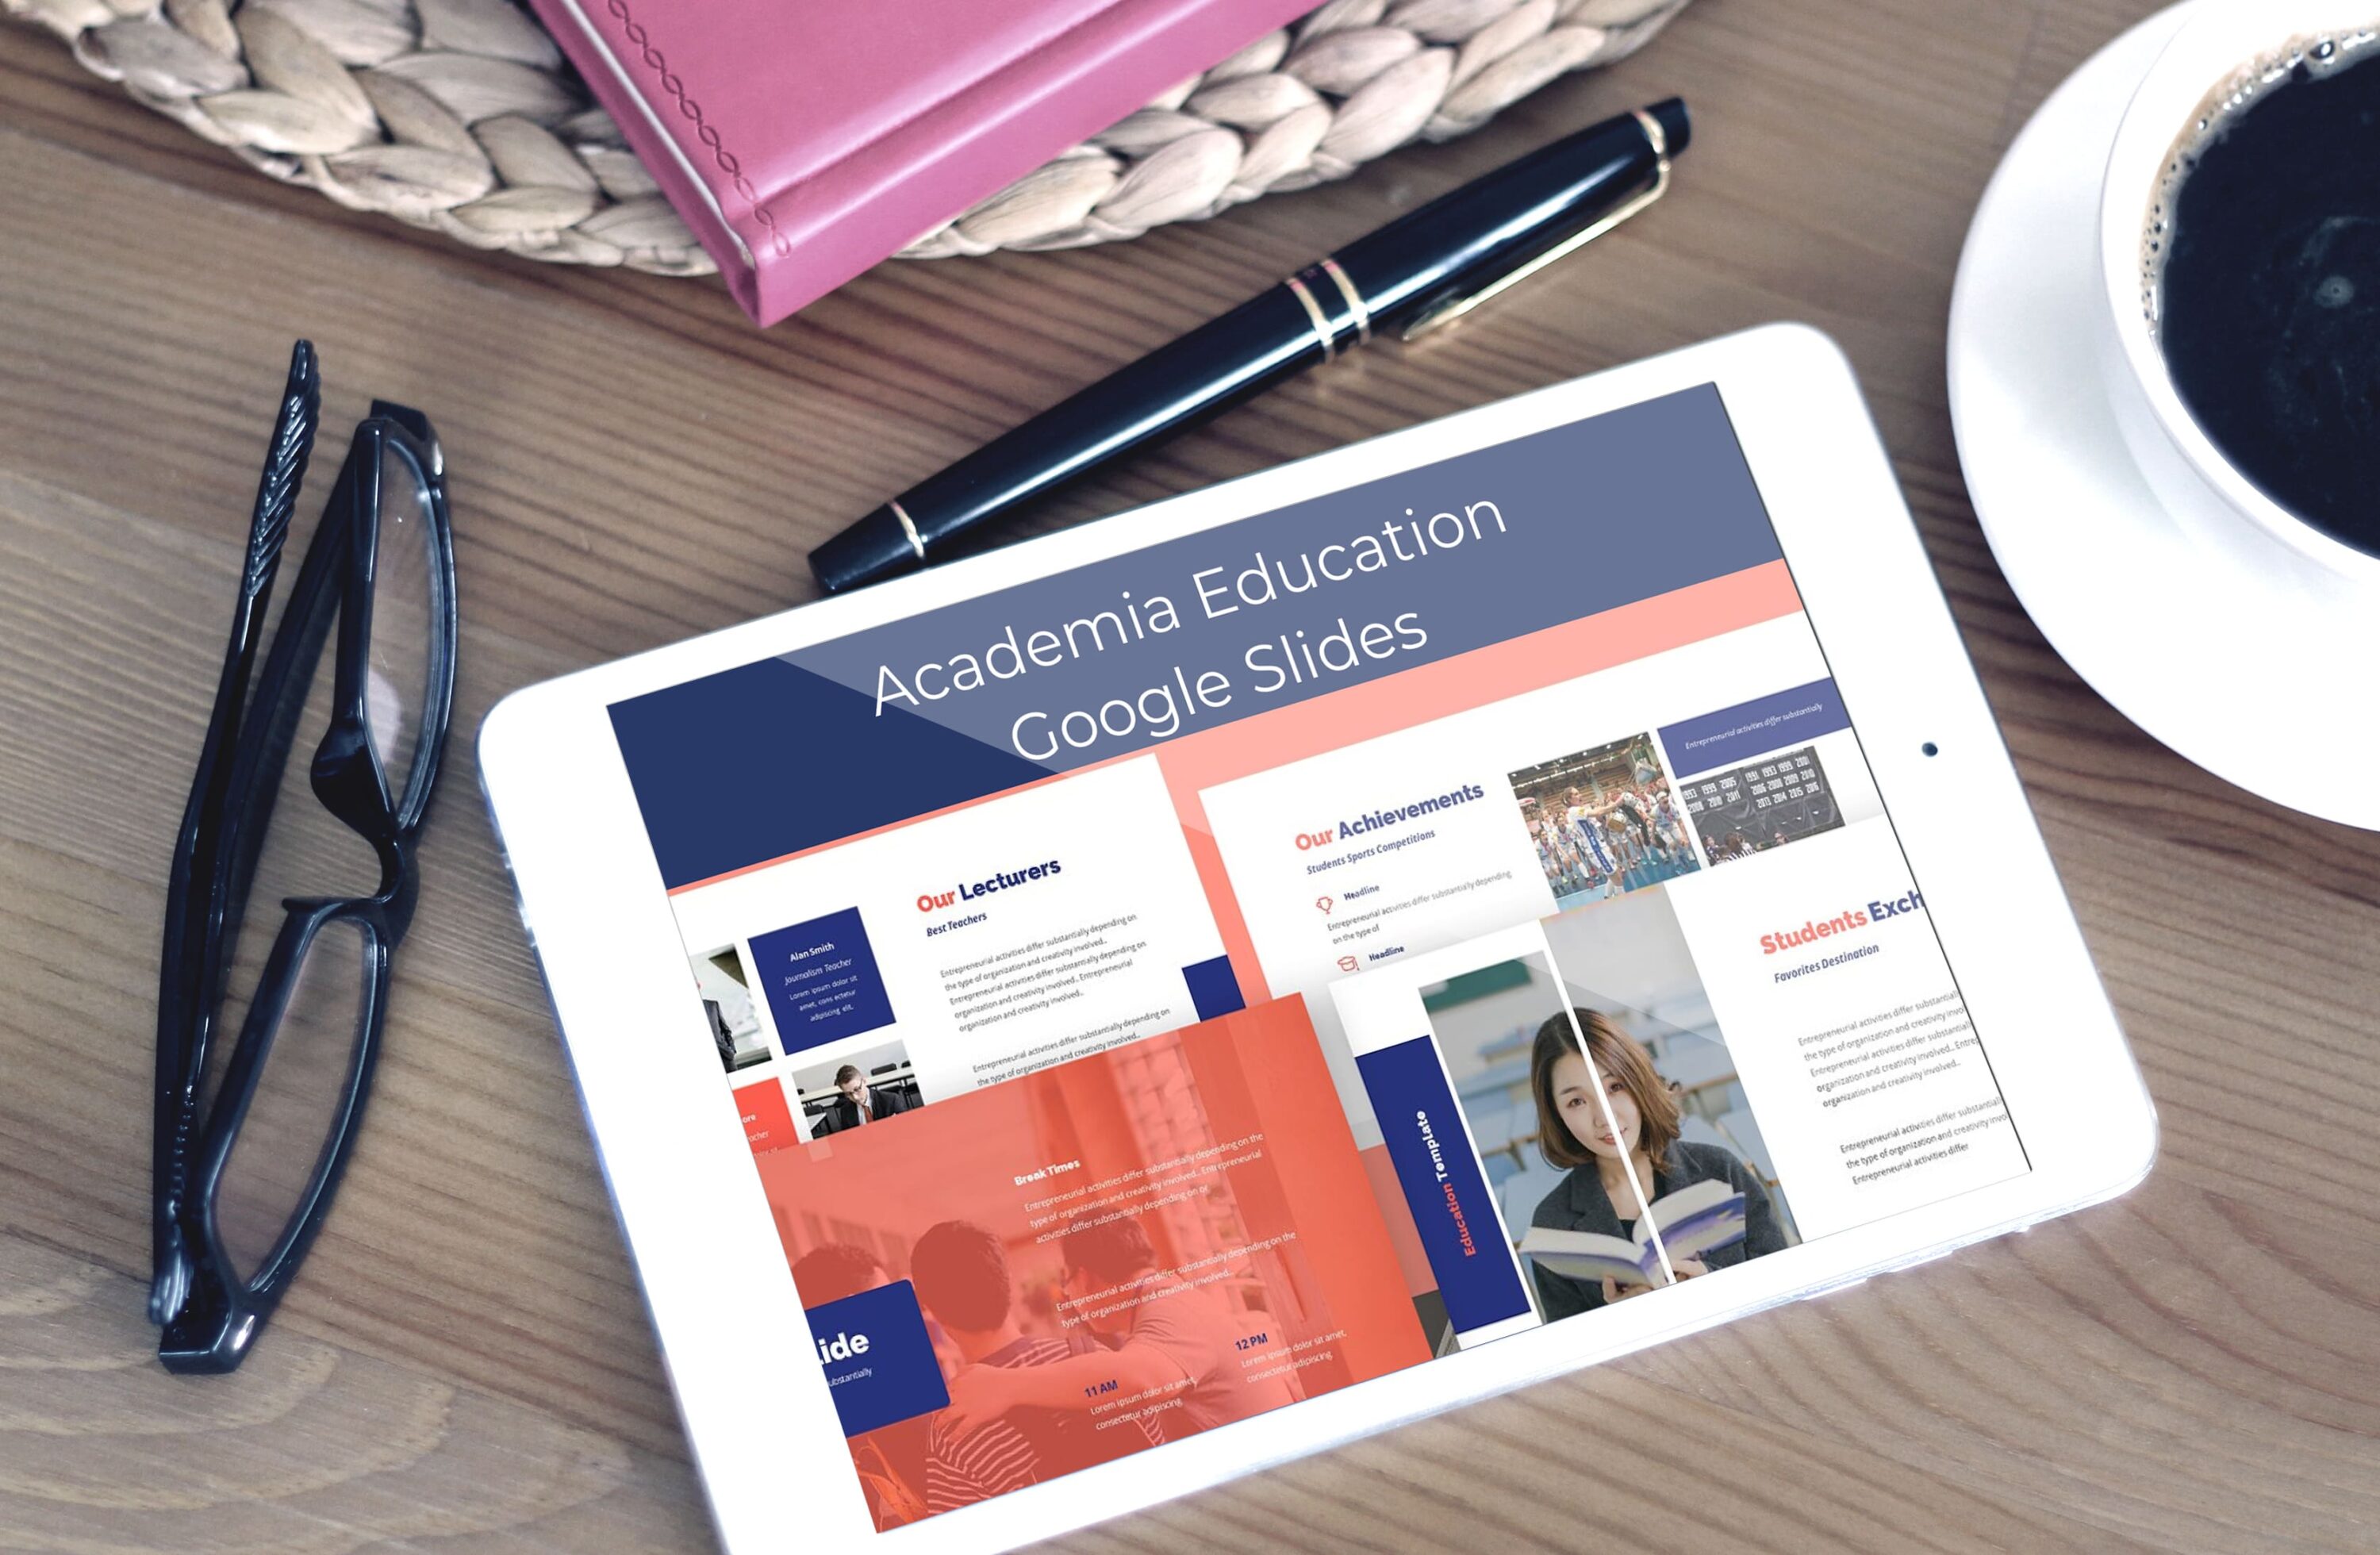 Academia Education Google Slides - tablet.